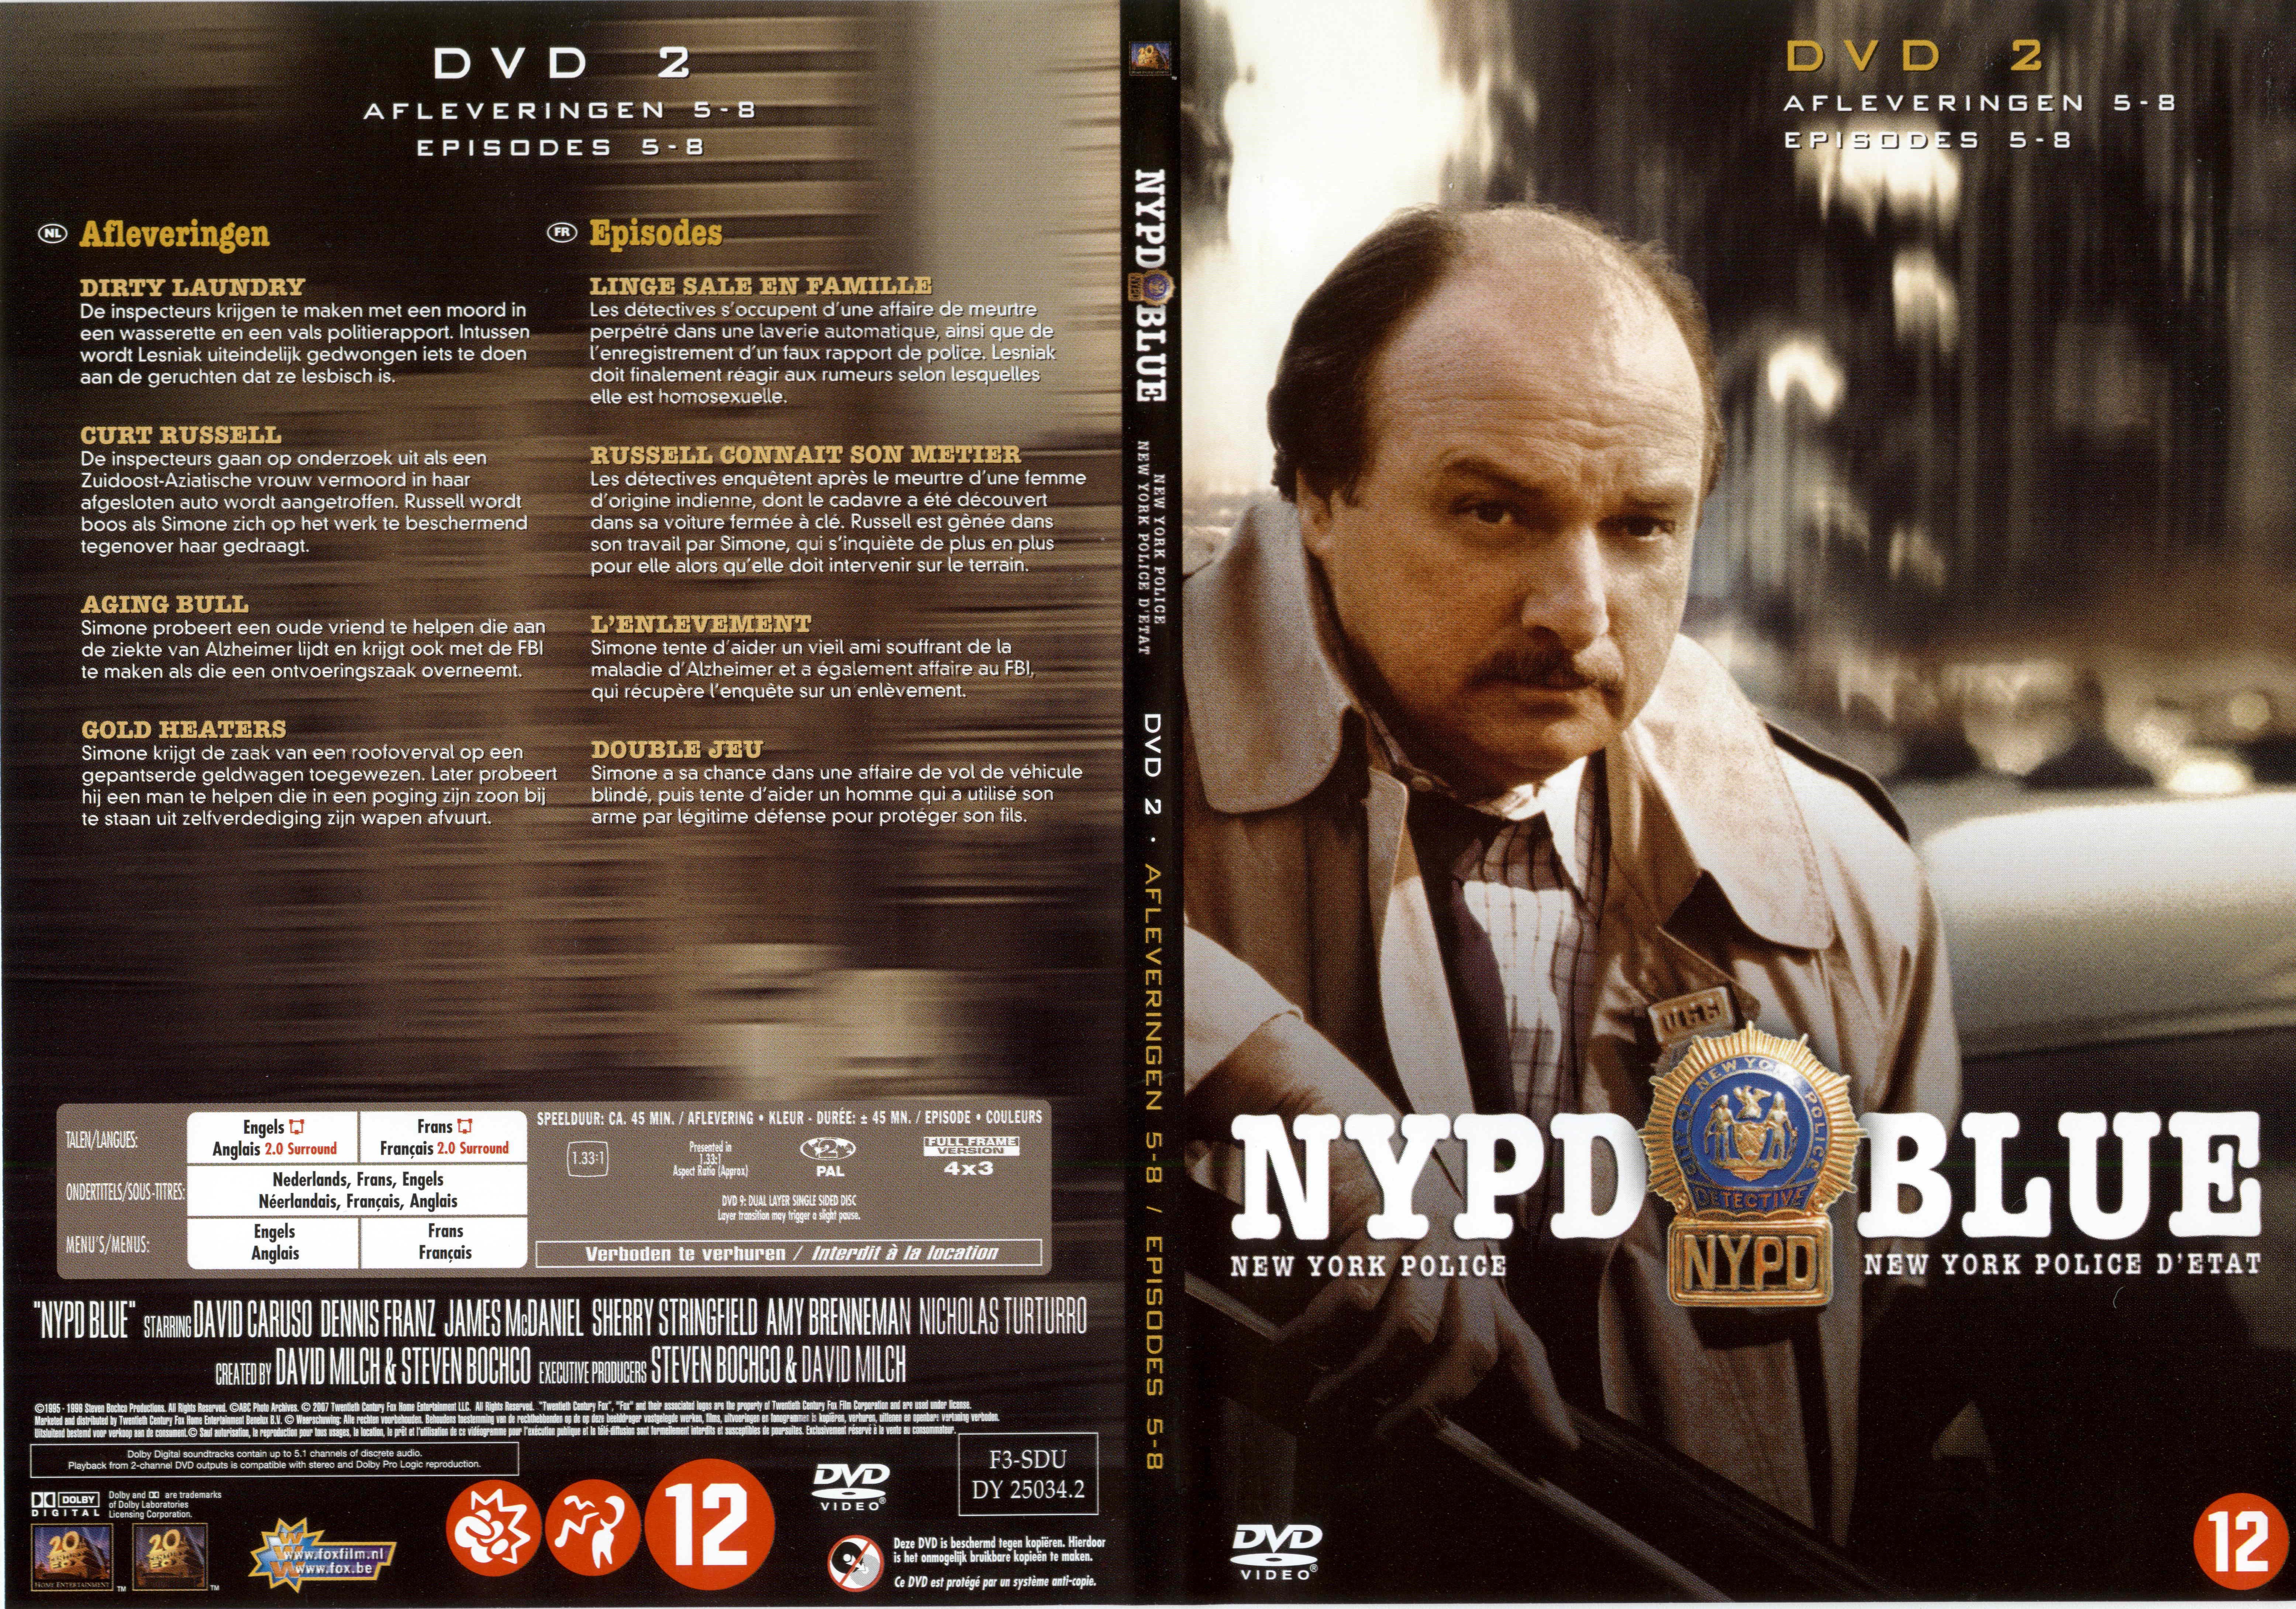 Jaquette DVD NYPD Blue saison 03 dvd 02